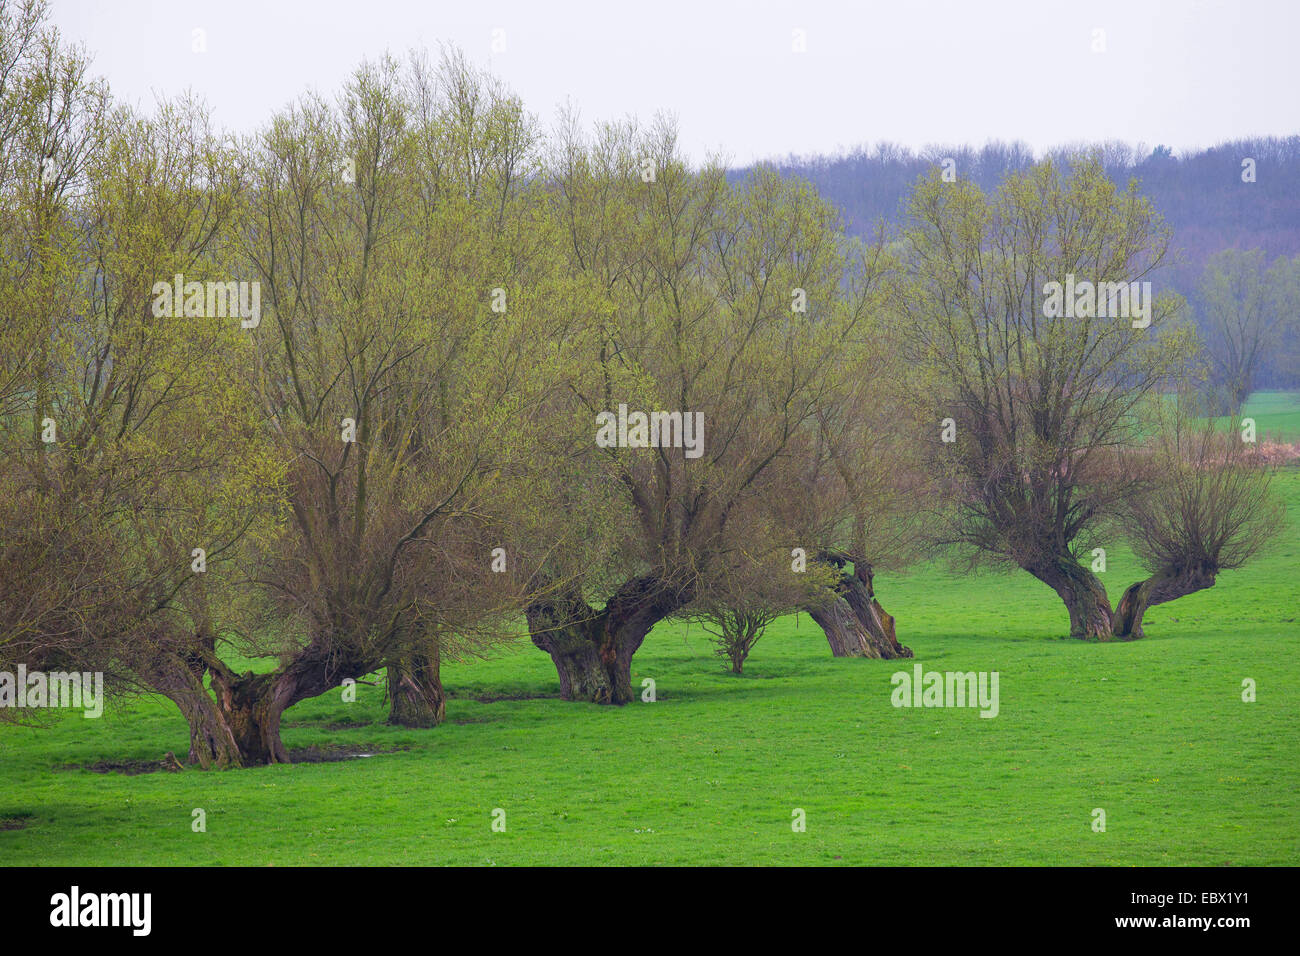 Willow, vimini (Salix spec.), fila di salici pollarded in un prato, Germania Foto Stock